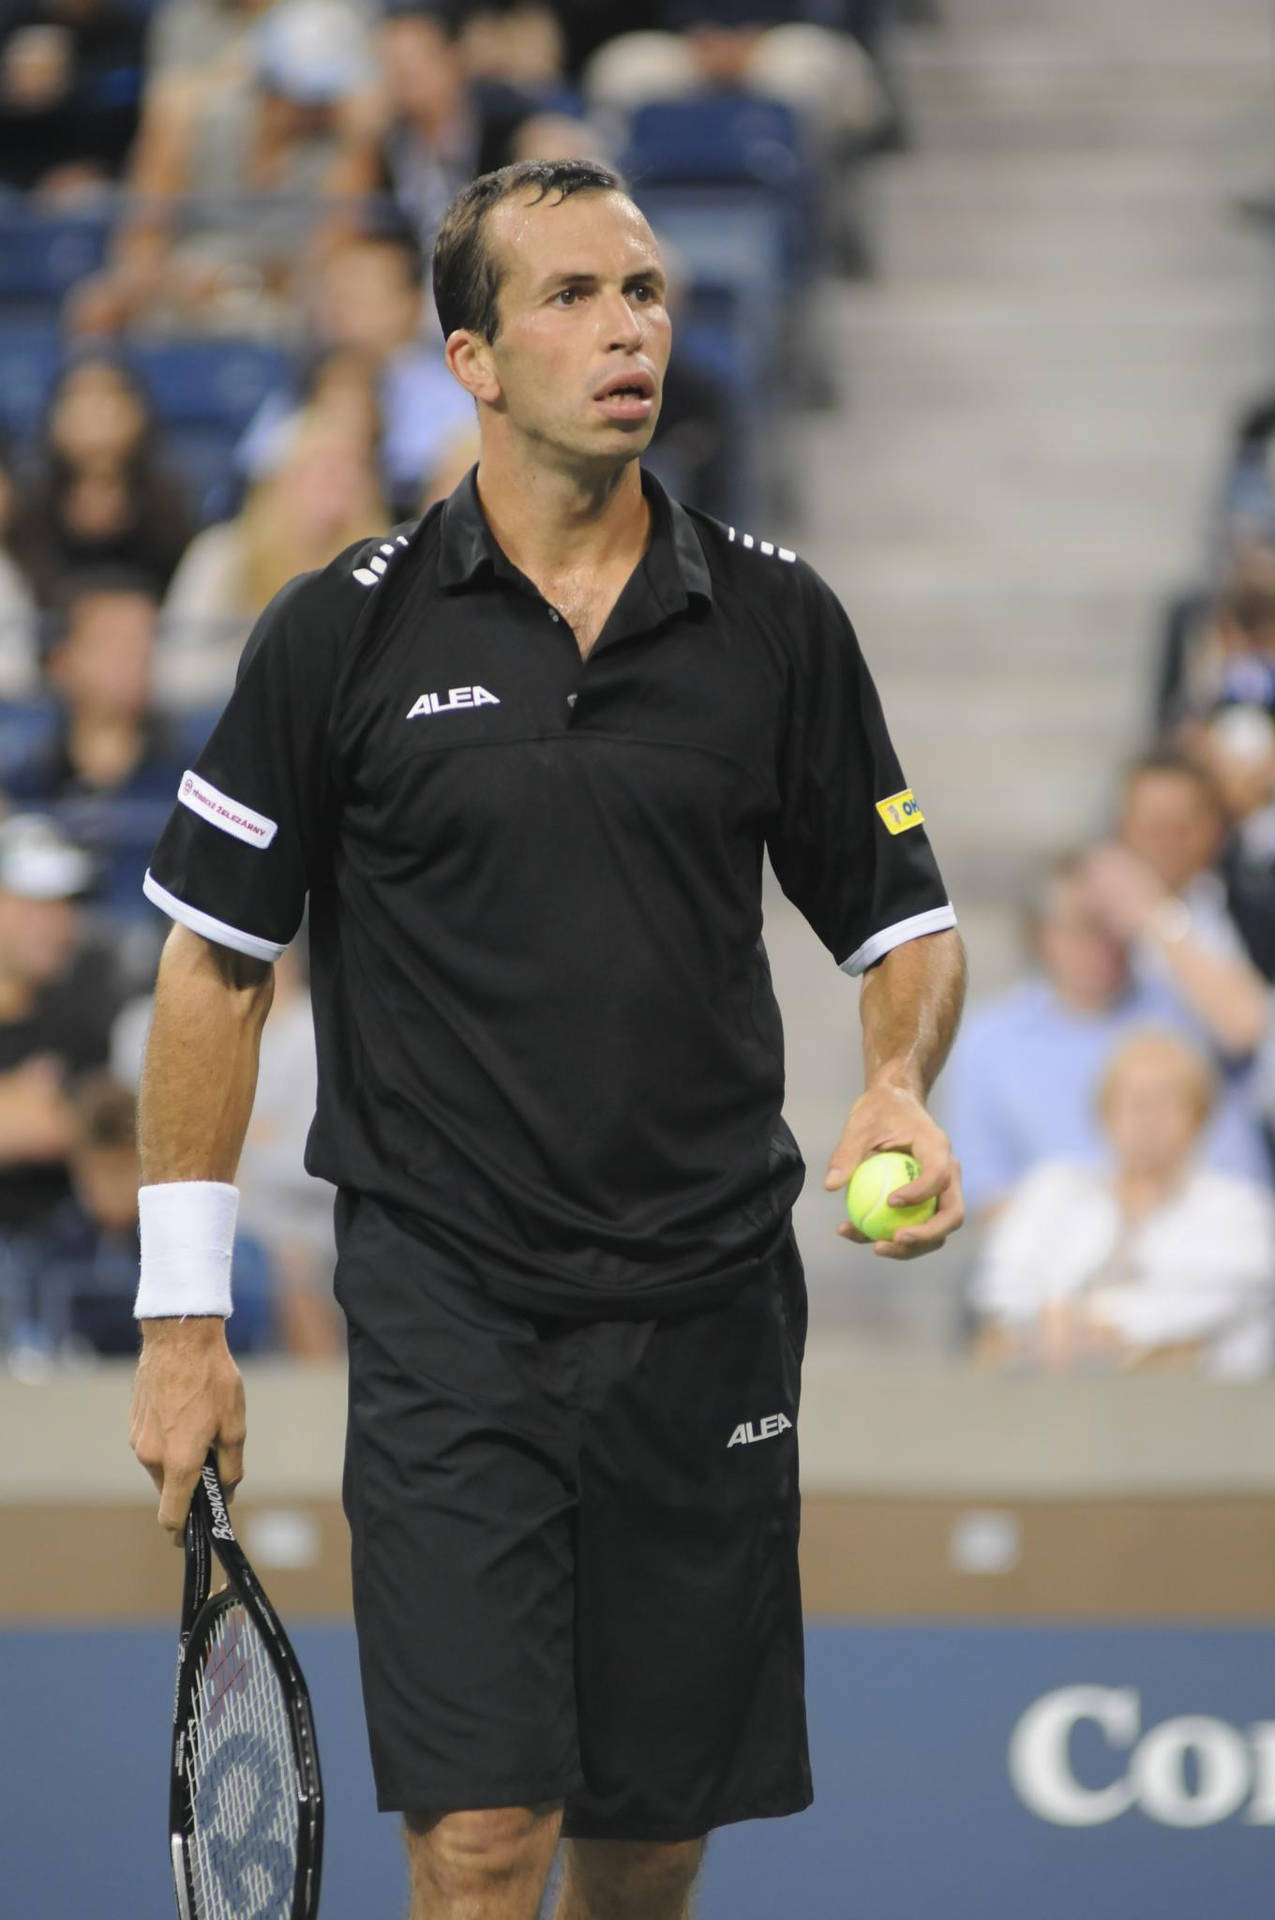 Radek Stepanek In Black Tennis Outfit Wallpaper